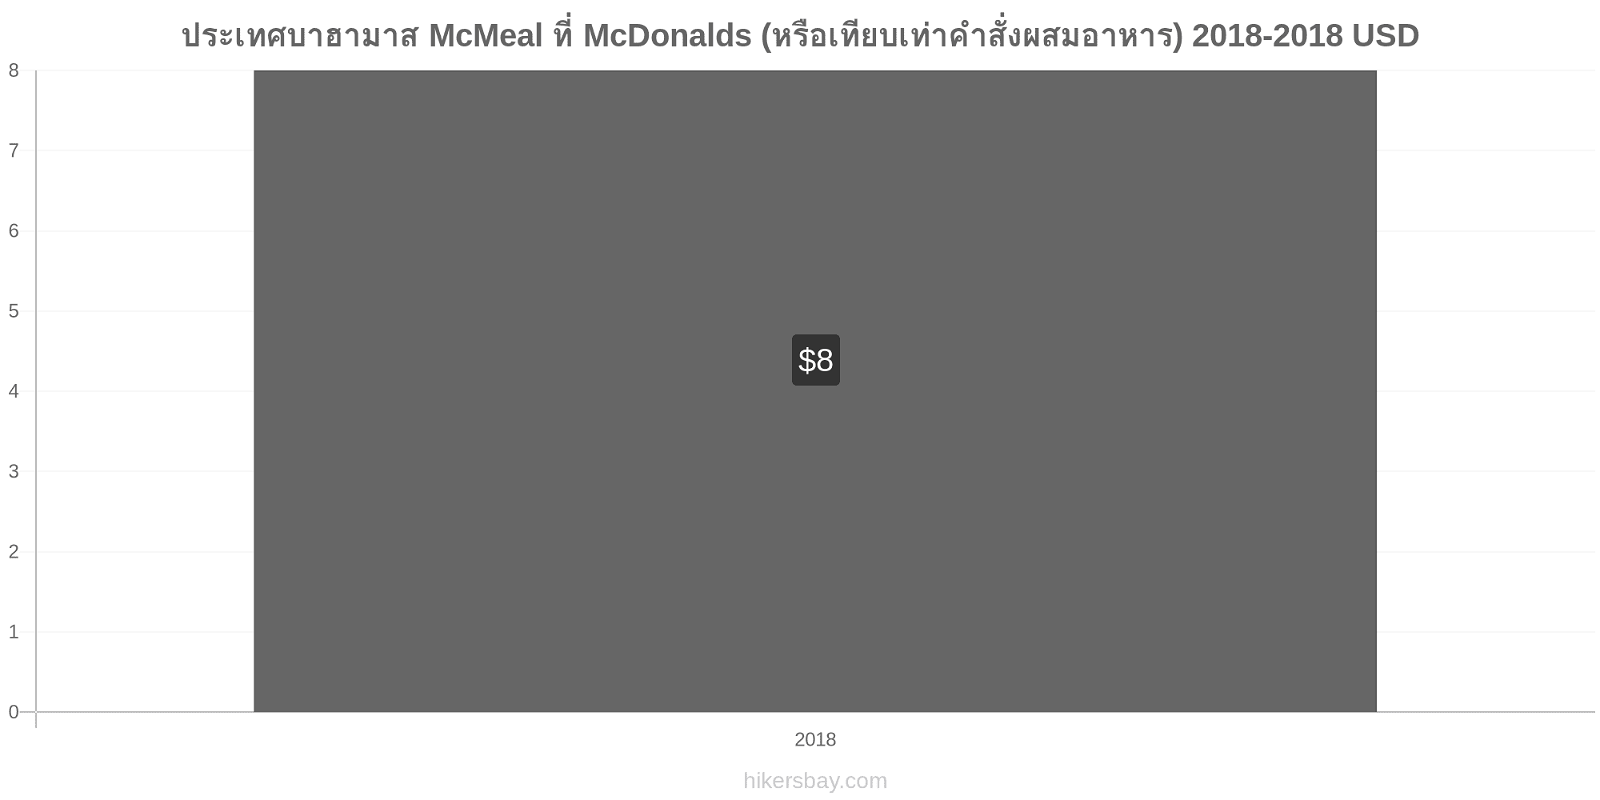 ประเทศบาฮามาส การเปลี่ยนแปลงราคา McMeal ที่ McDonalds (หรือเทียบเท่าคำสั่งผสมอาหาร) hikersbay.com